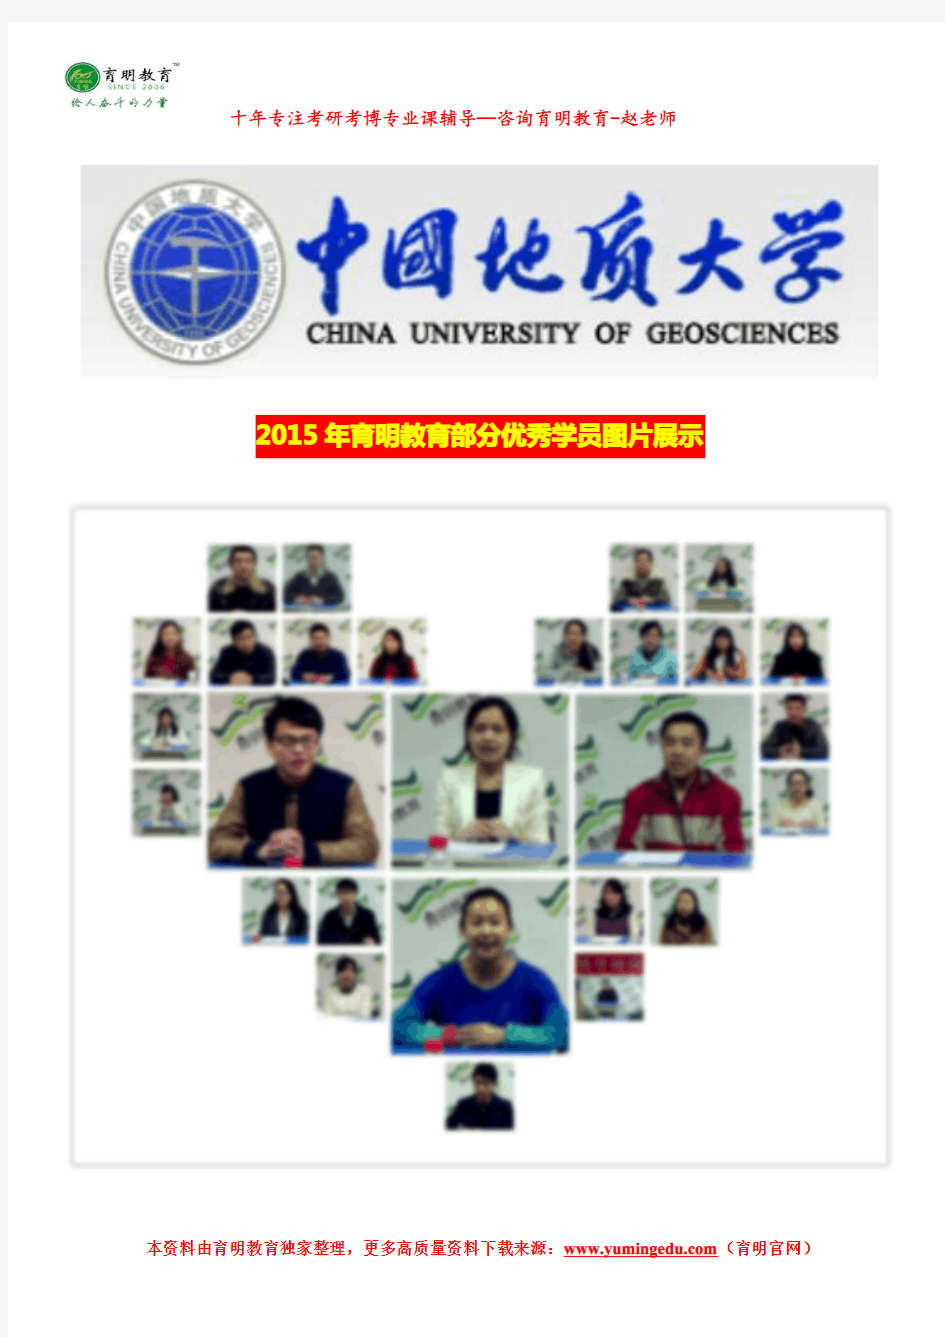 2017年中国地质大学(北京)公共管理专业考研参考书目、录取人数、报录比、考试科目、考研真题及其解析